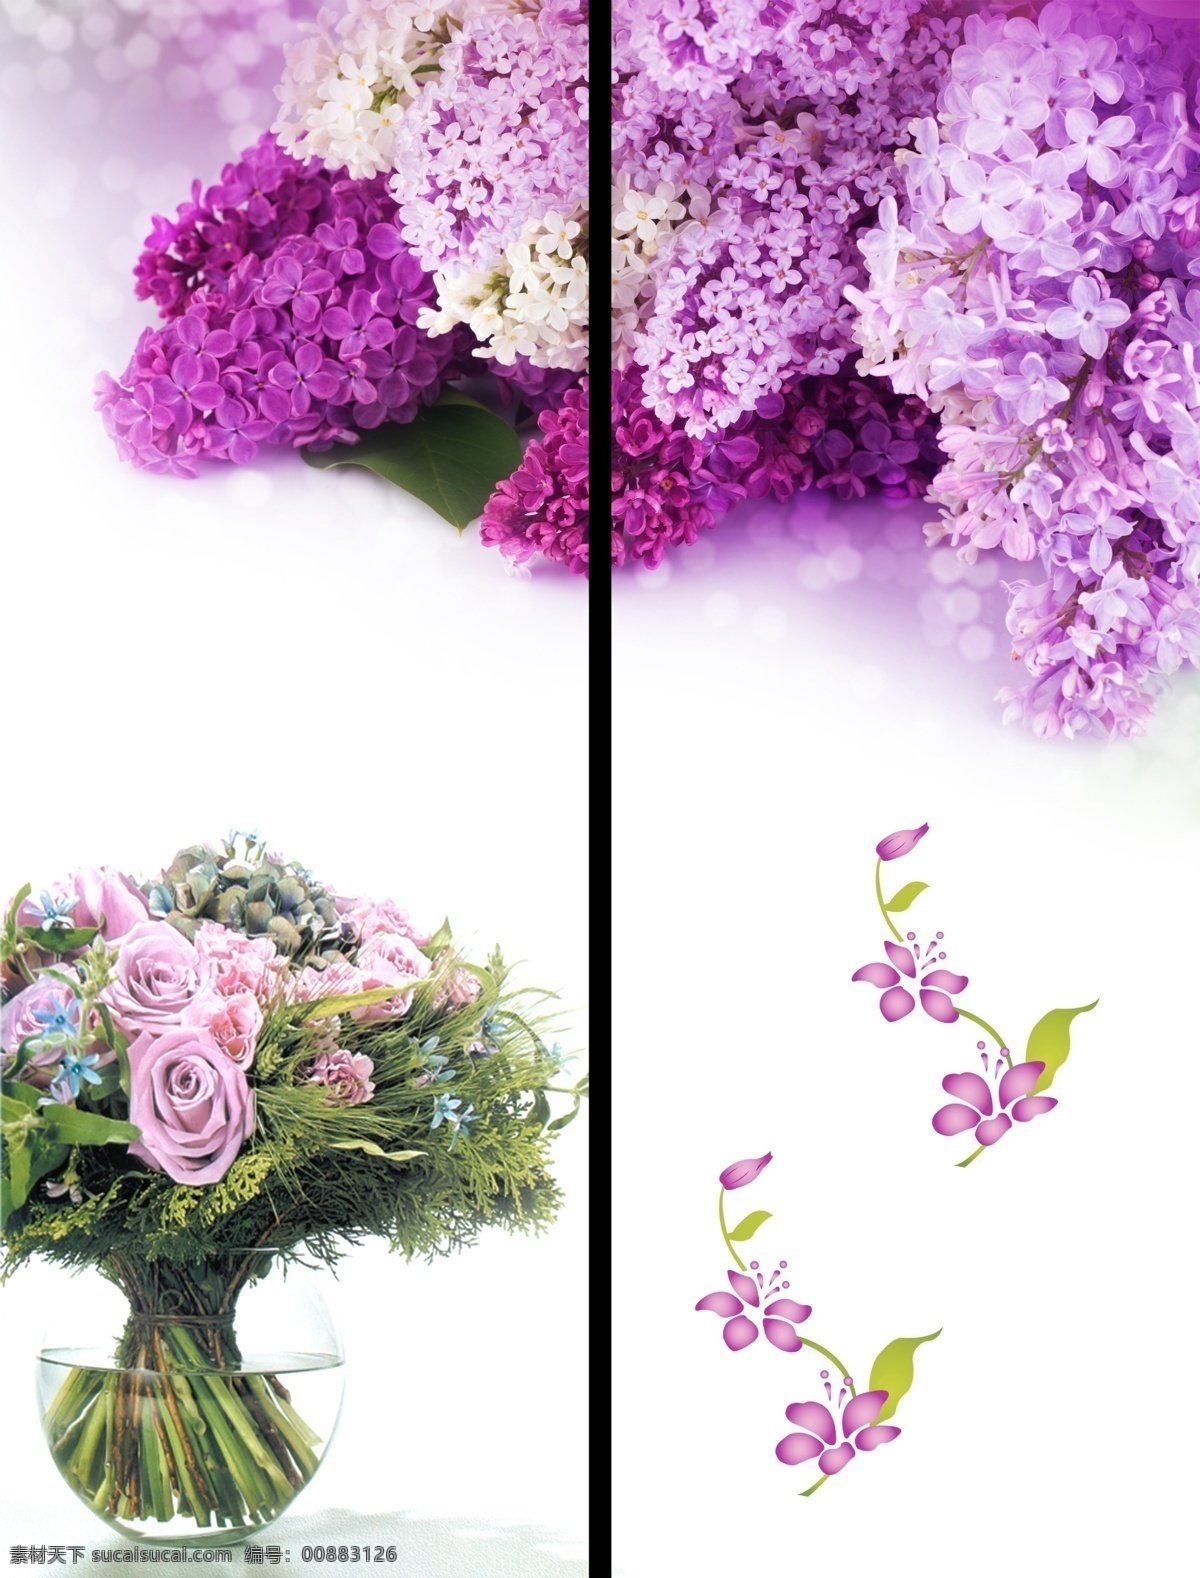 移门 花 背景 广告设计模板 花边 花瓶 移门花 紫丁香 移门图案 源文件 装饰素材